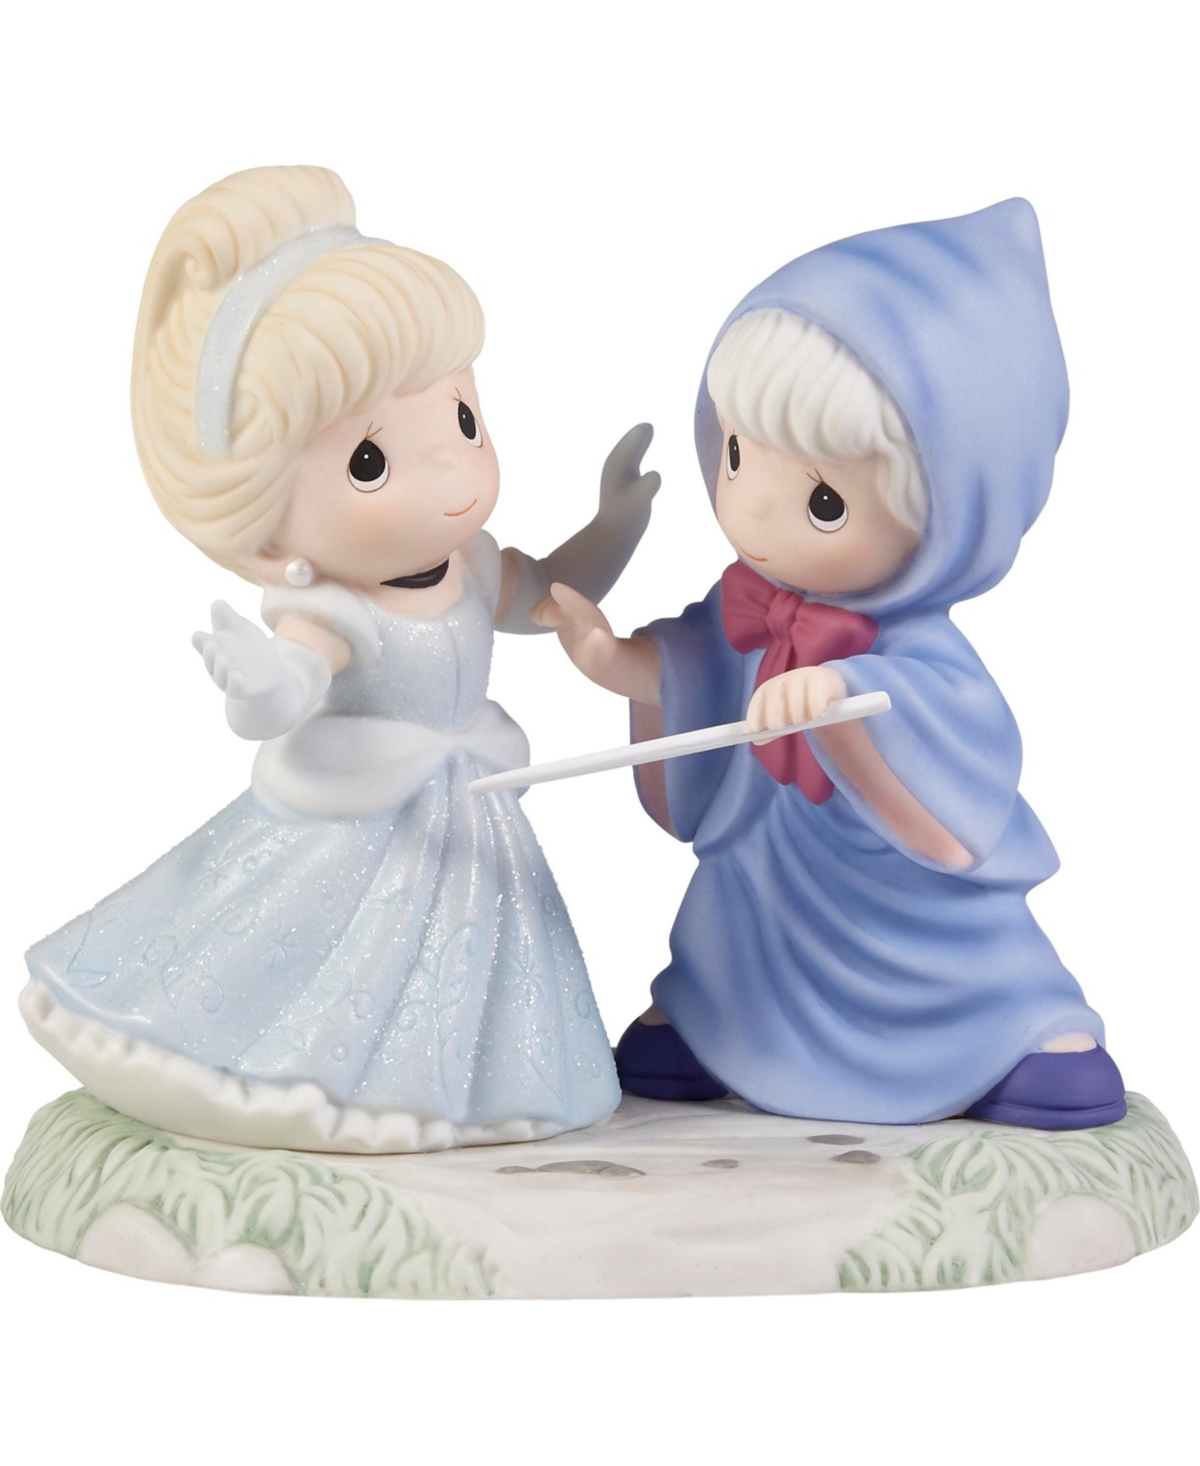 221043 Disney Cinderella May All Your Dreams Come True Bisque Porcelain Figurine - Multicolor